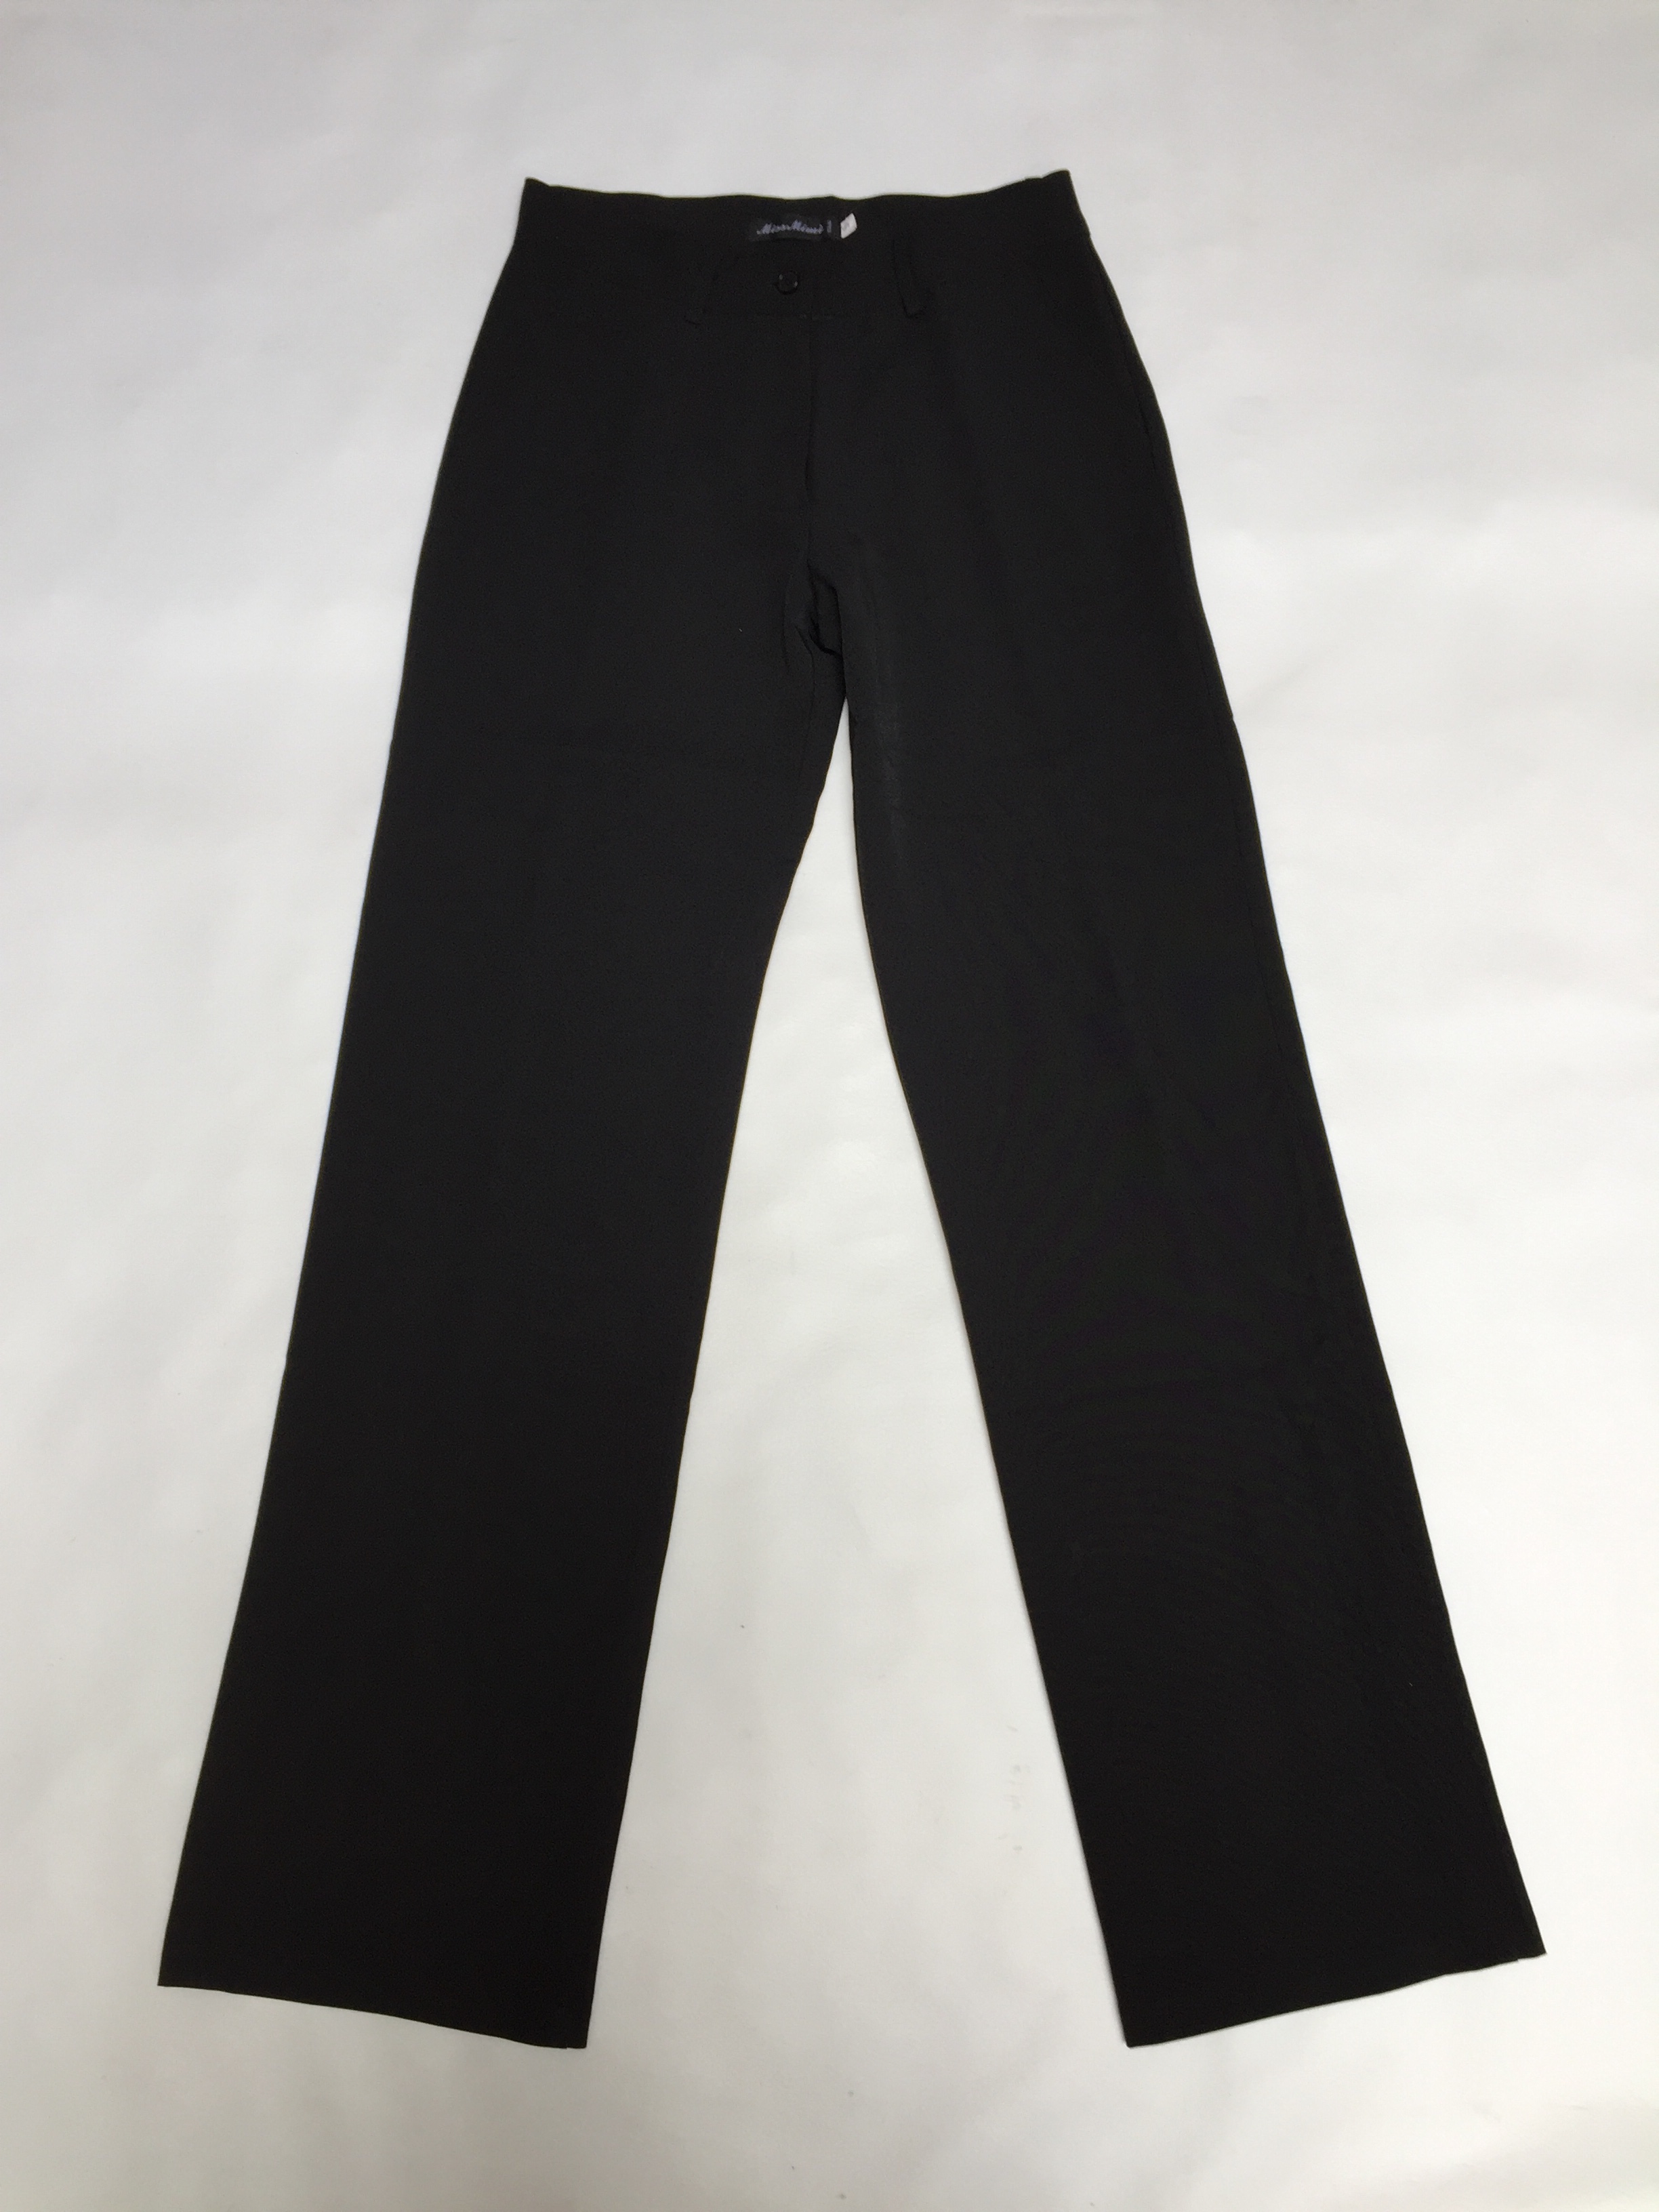 Pantalón de sastre negro, con botón y cierre, bolsillos laterales y uno posterior, corte recto. Pretina 72cm
Talla S